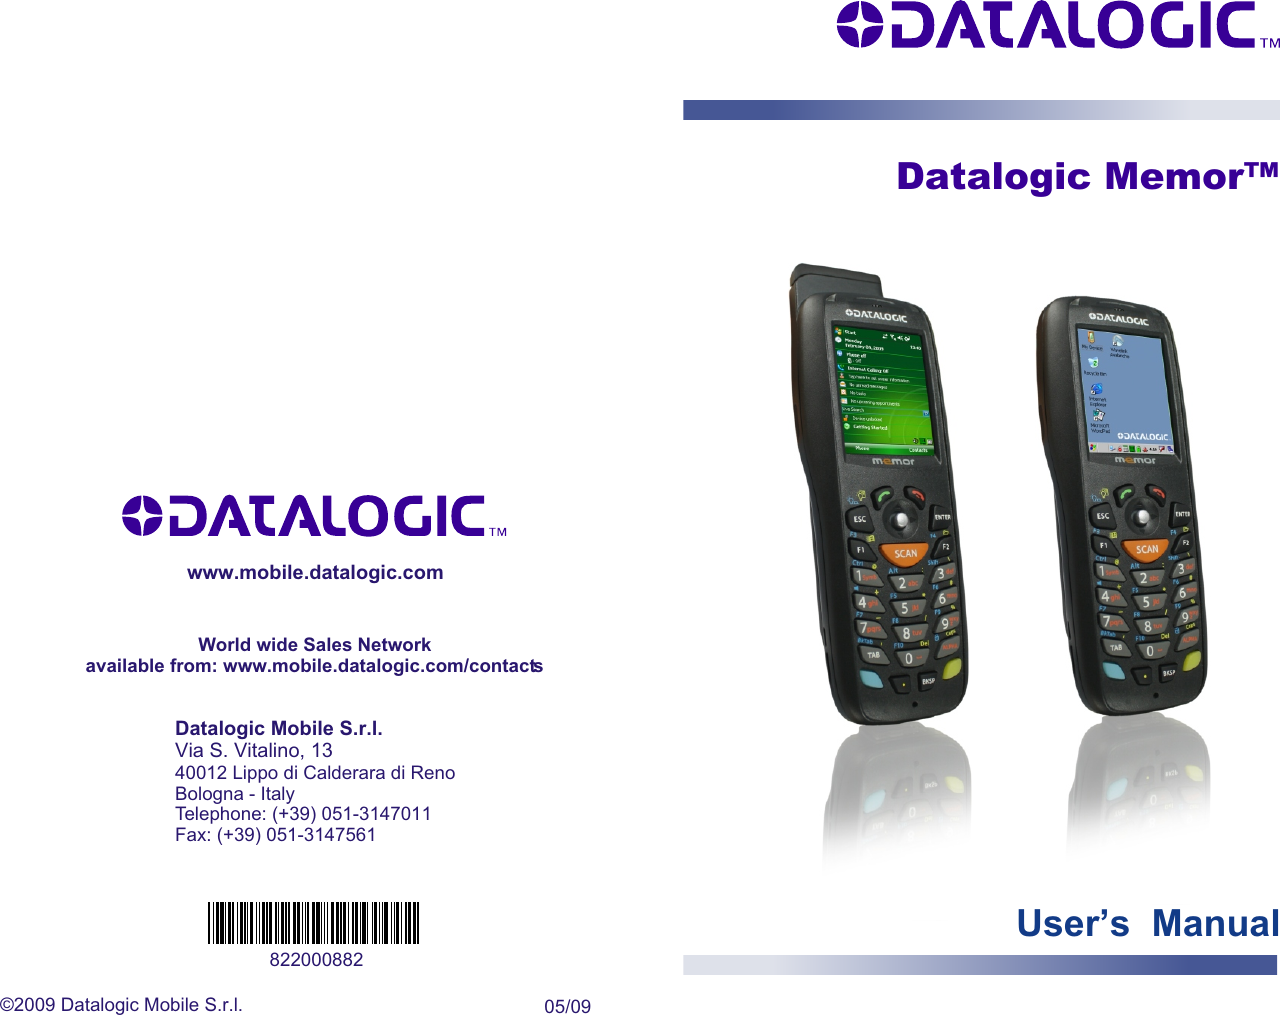 Datalogic Memor™©2009 Datalogic Mobile S.r.l. 05/09822000882www.mobile.datalogic.comDatalogic Mobile S.r.l.Via S. Vitalino, 1340012 Lippo di Calderara di RenoBologna - ItalyTelephone: (+39) 051-3147011Fax: (+39) 051-3147561World wide Sales Networkavailable from: www.mobile.datalogic.com/contactsUser’s  Manual